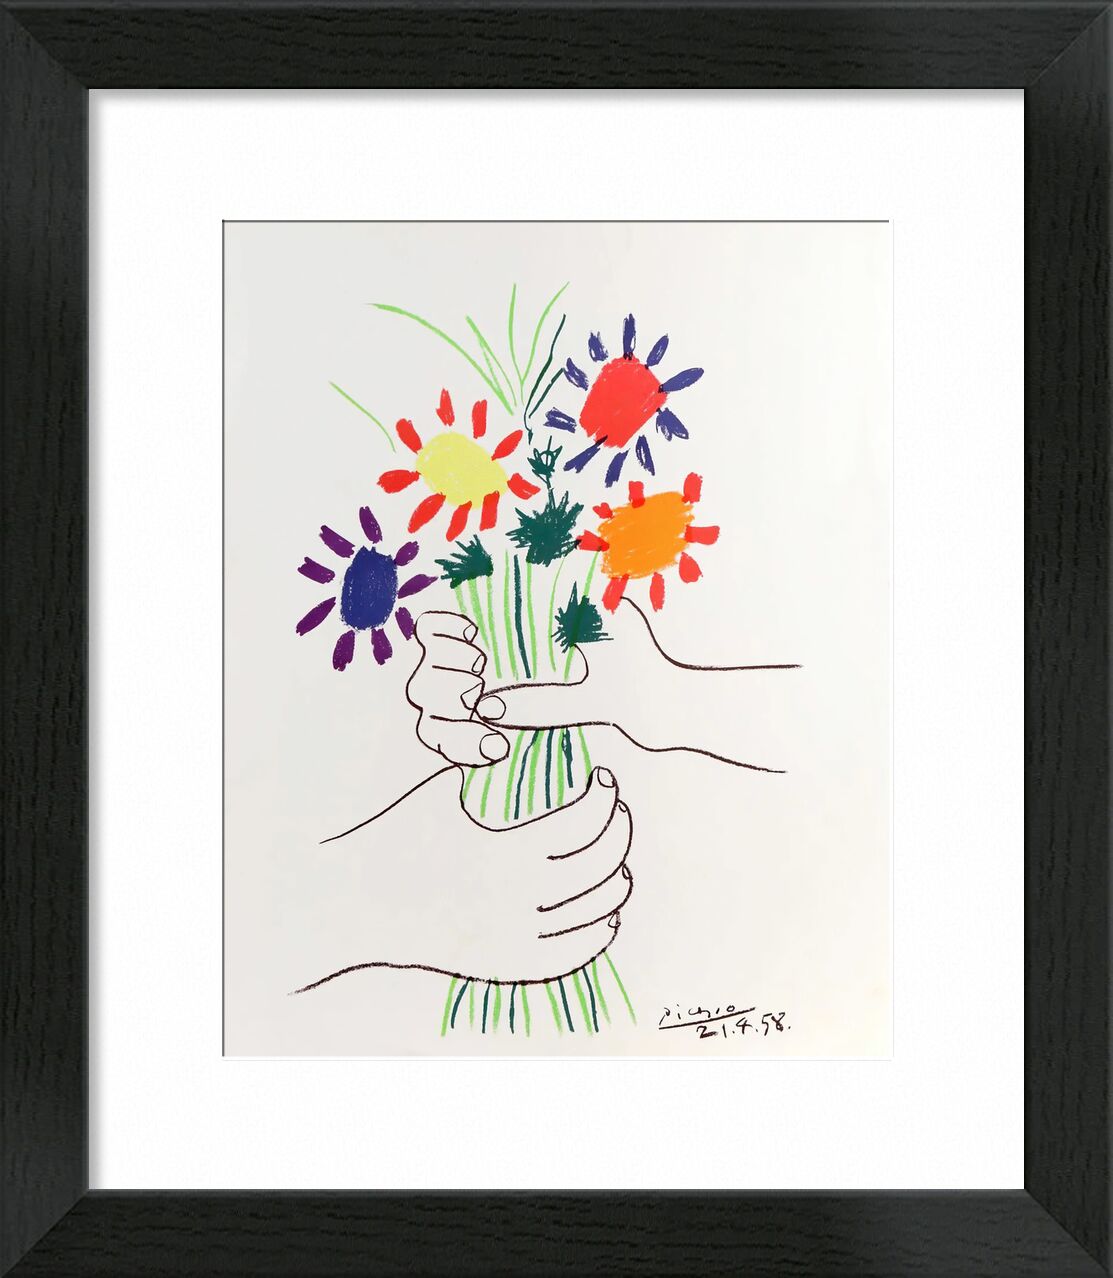 Blumenstrauß des Friedens - 1958 von Bildende Kunst, Prodi Art, Frieden, Picasso, PABLO PICASSO, Blume, Bündel